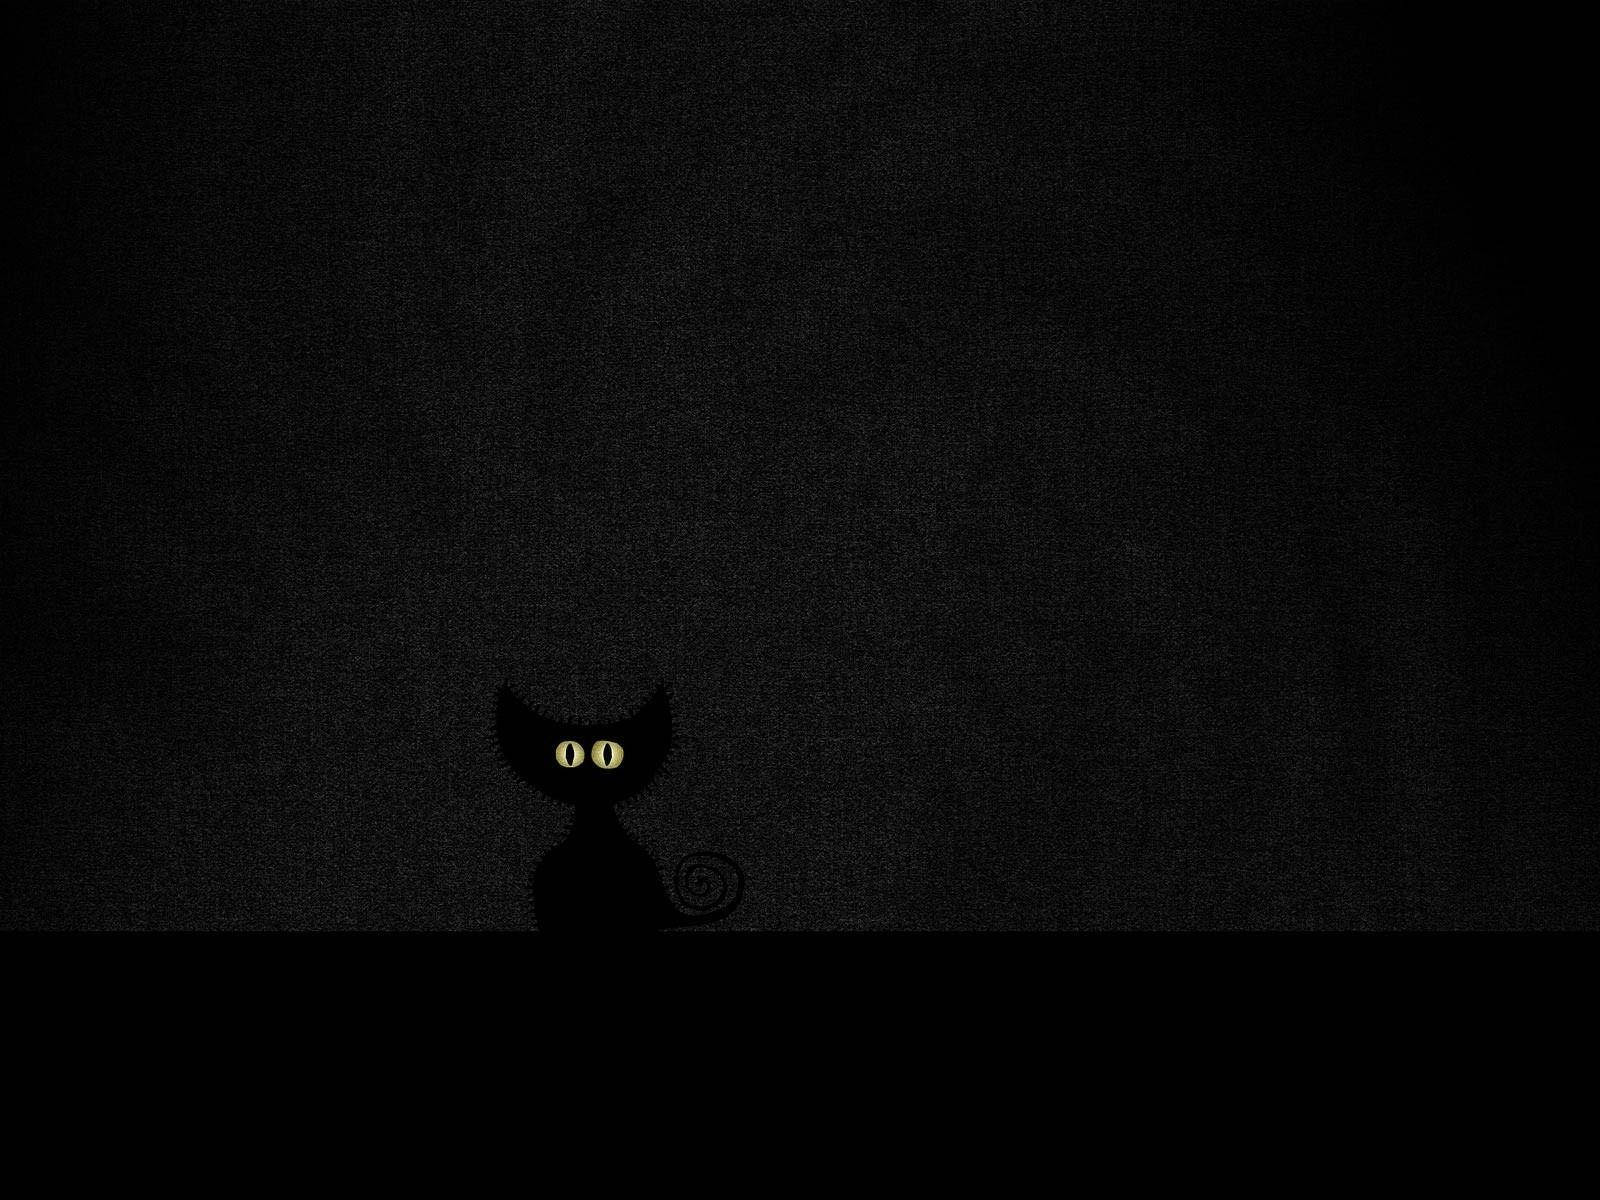 Simple Black Cat Eyes Halloween Aesthetic Wallpaper